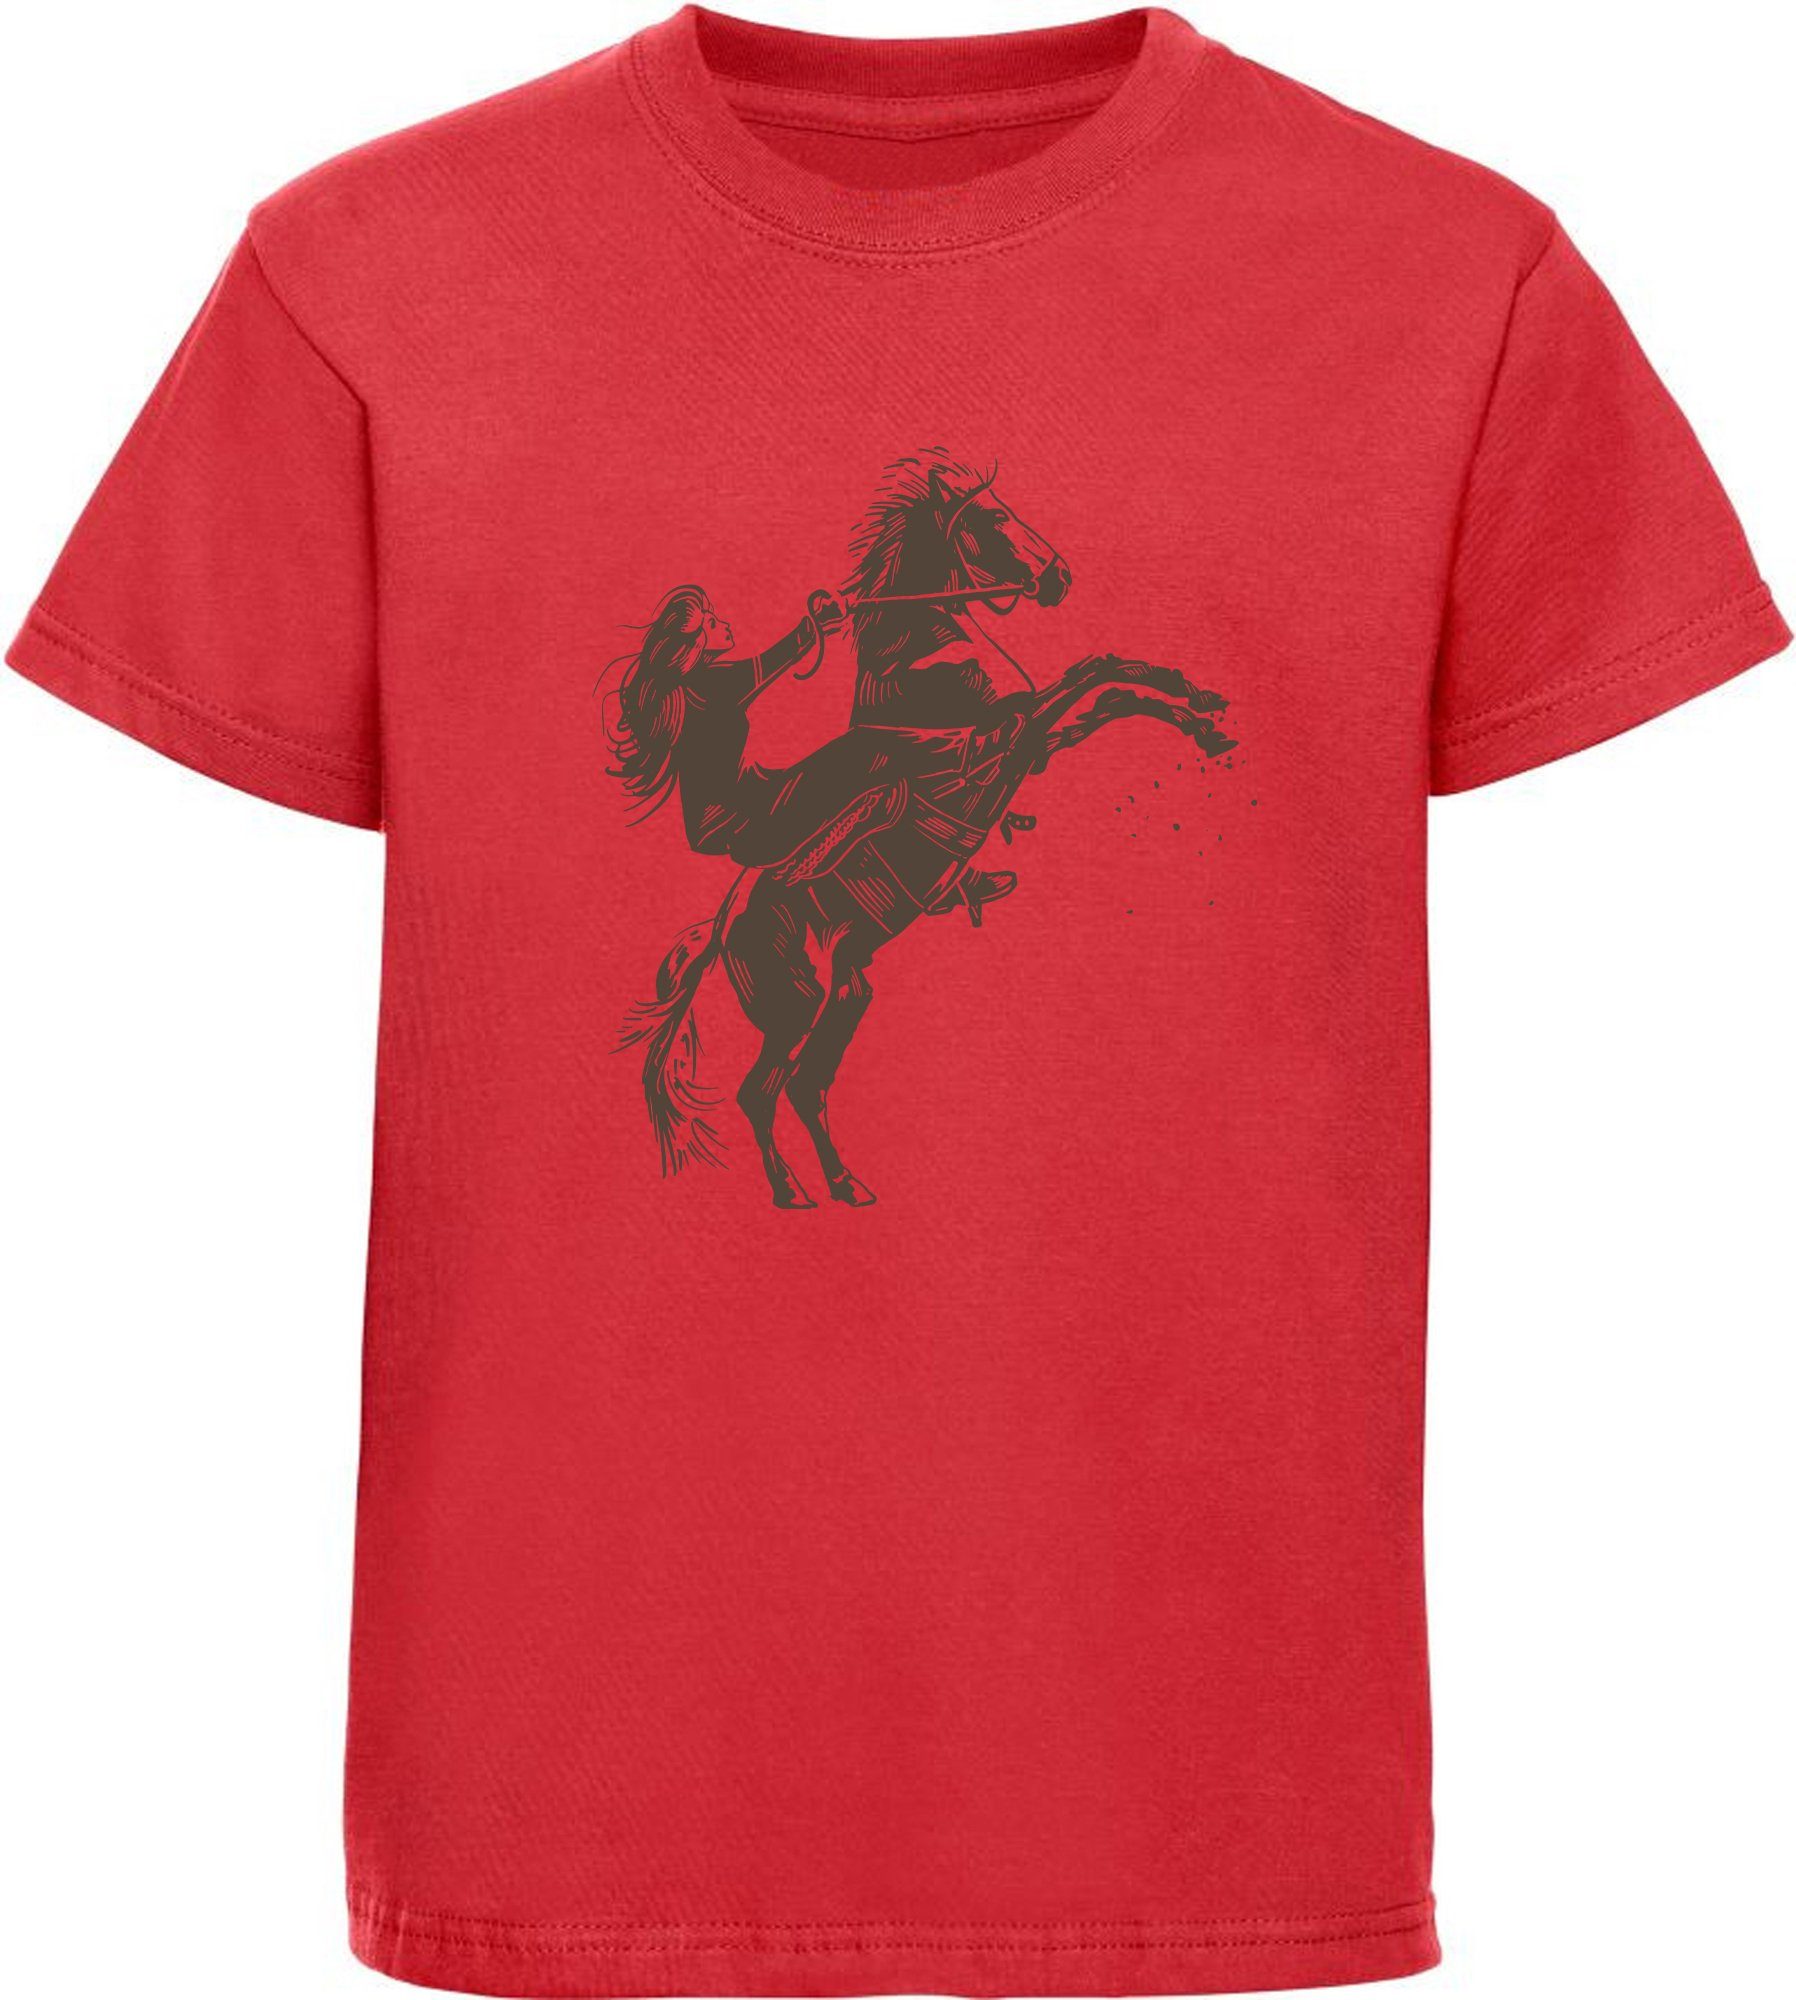 MyDesign24 T-Shirt Kinder Pferde Print Shirt bedruckt - Aufsteigendes Pferd mit Reiter Baumwollshirt mit Aufdruck, i252 rot